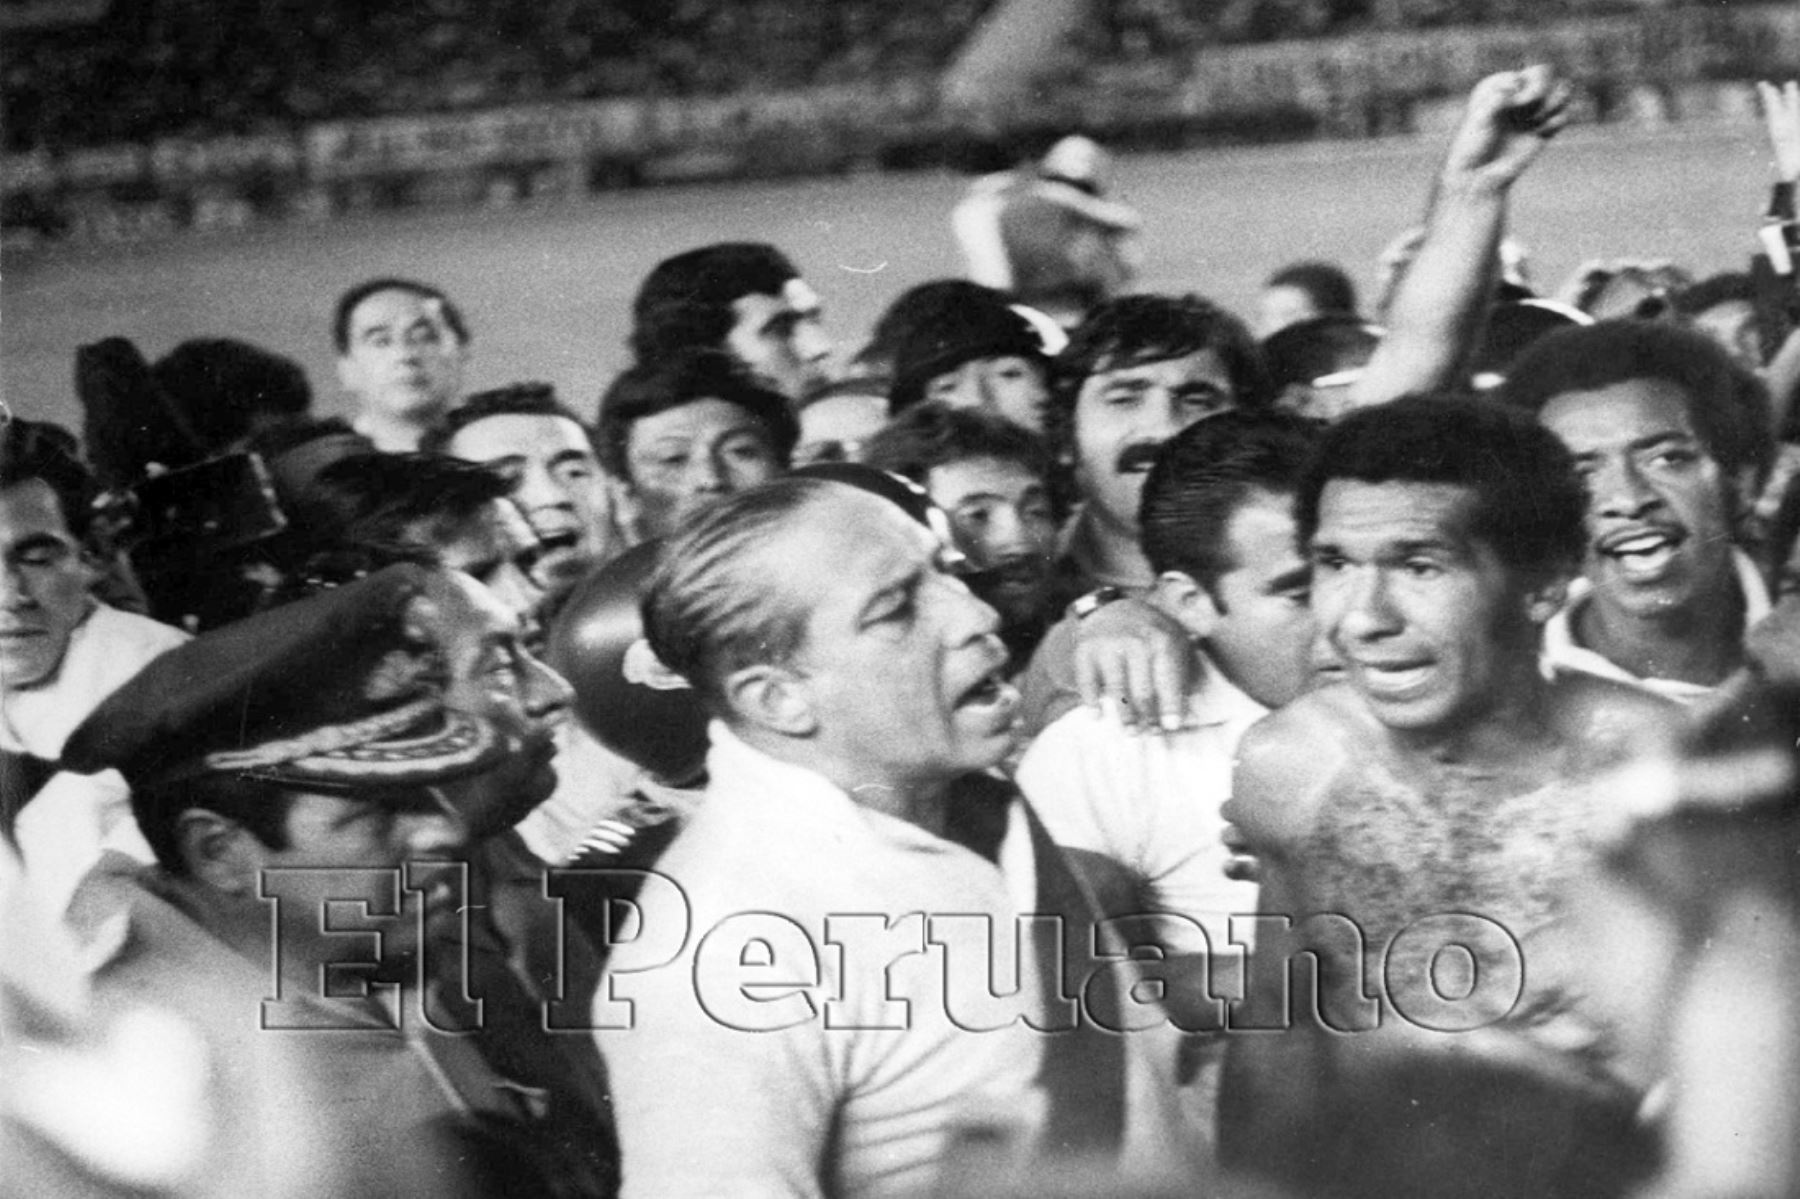 Presidente Francisco Morales Bermúdez celebra la clasificación del Perú al mundial Argentina 78 tras vencer a Chile en el Estadio Nacional. El entonces jefe del Estado se puso la camiseta del defensa nacional Julio Meléndez.